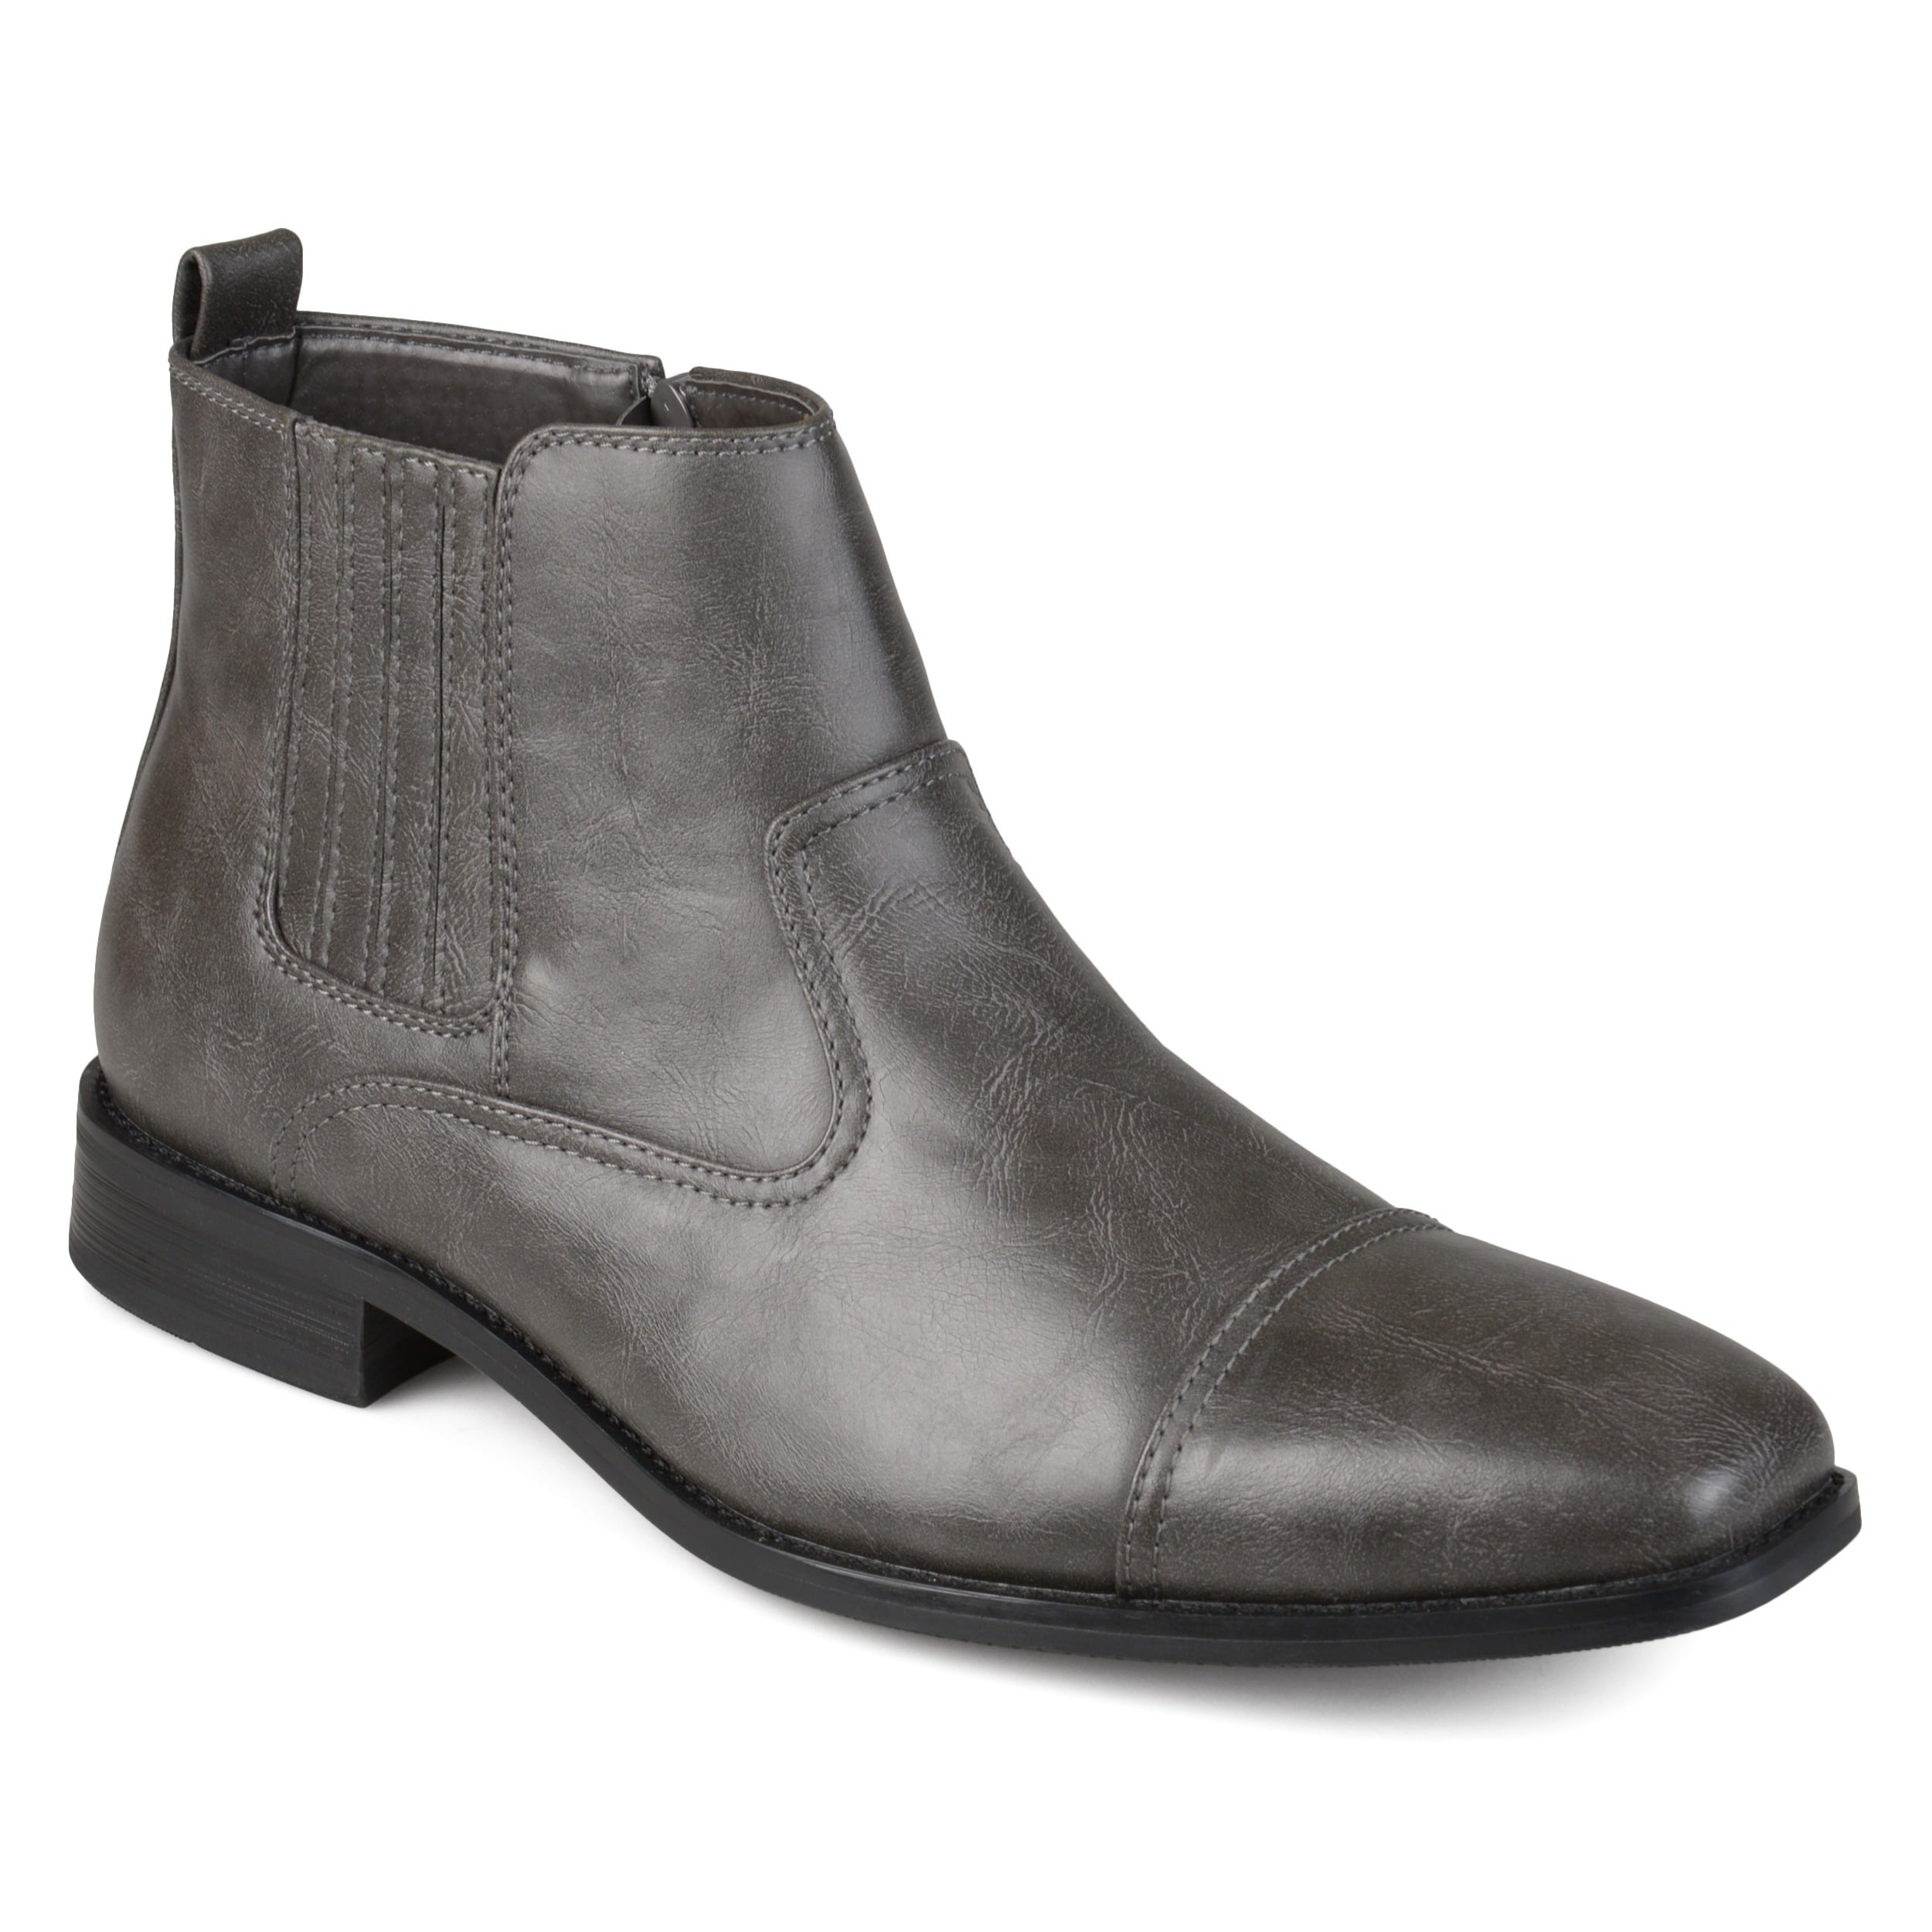 mens dress boots grey